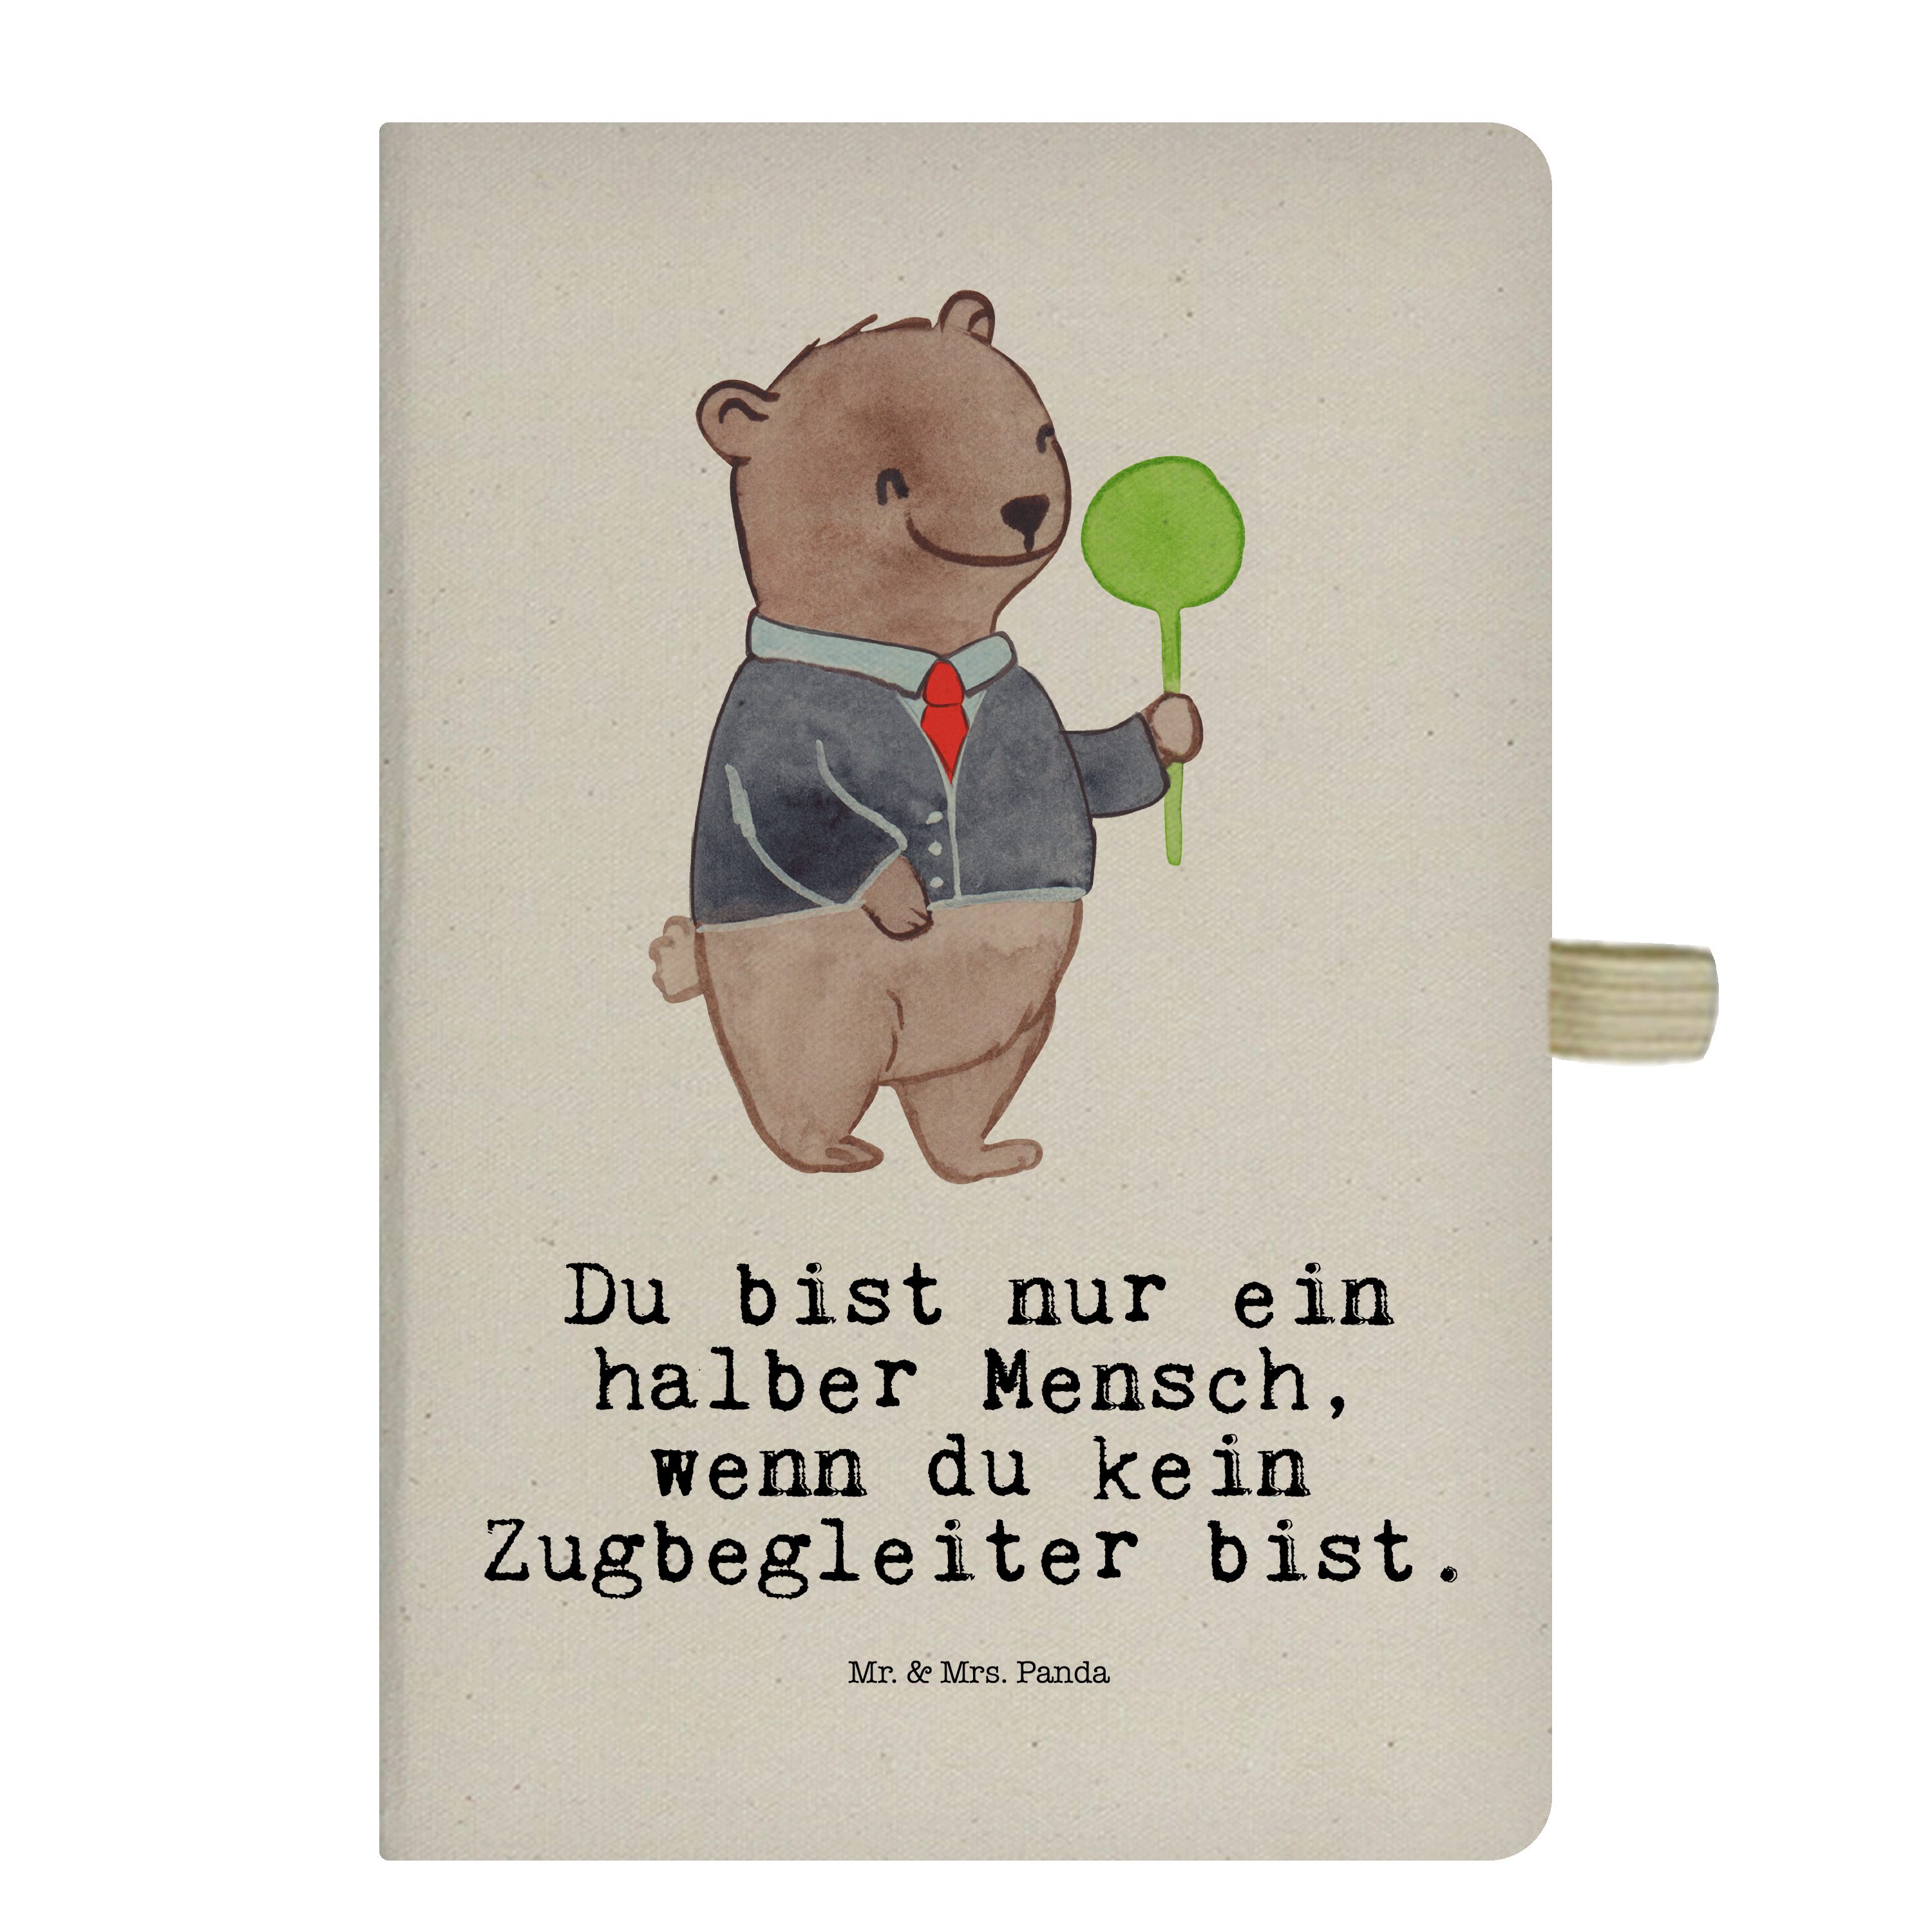 Mr. & Mrs. Panda Notizbuch Zugbegleiter mit Herz - Transparent - Geschenk, Firma, Beruf, Notizhe Mr. & Mrs. Panda